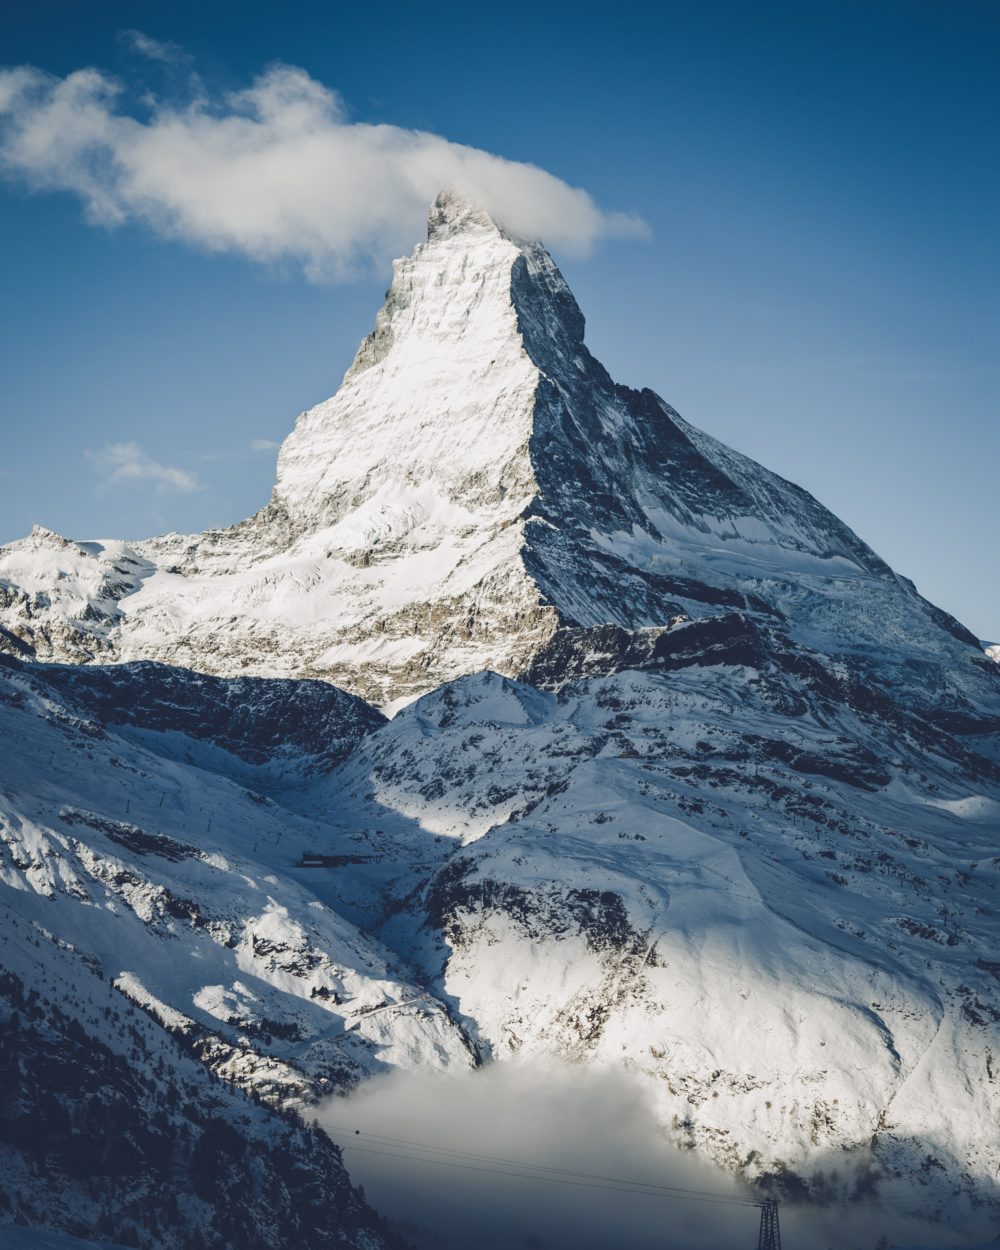 Berge der Alpen: Das Matterhorn, fotografiert von Philip Gow